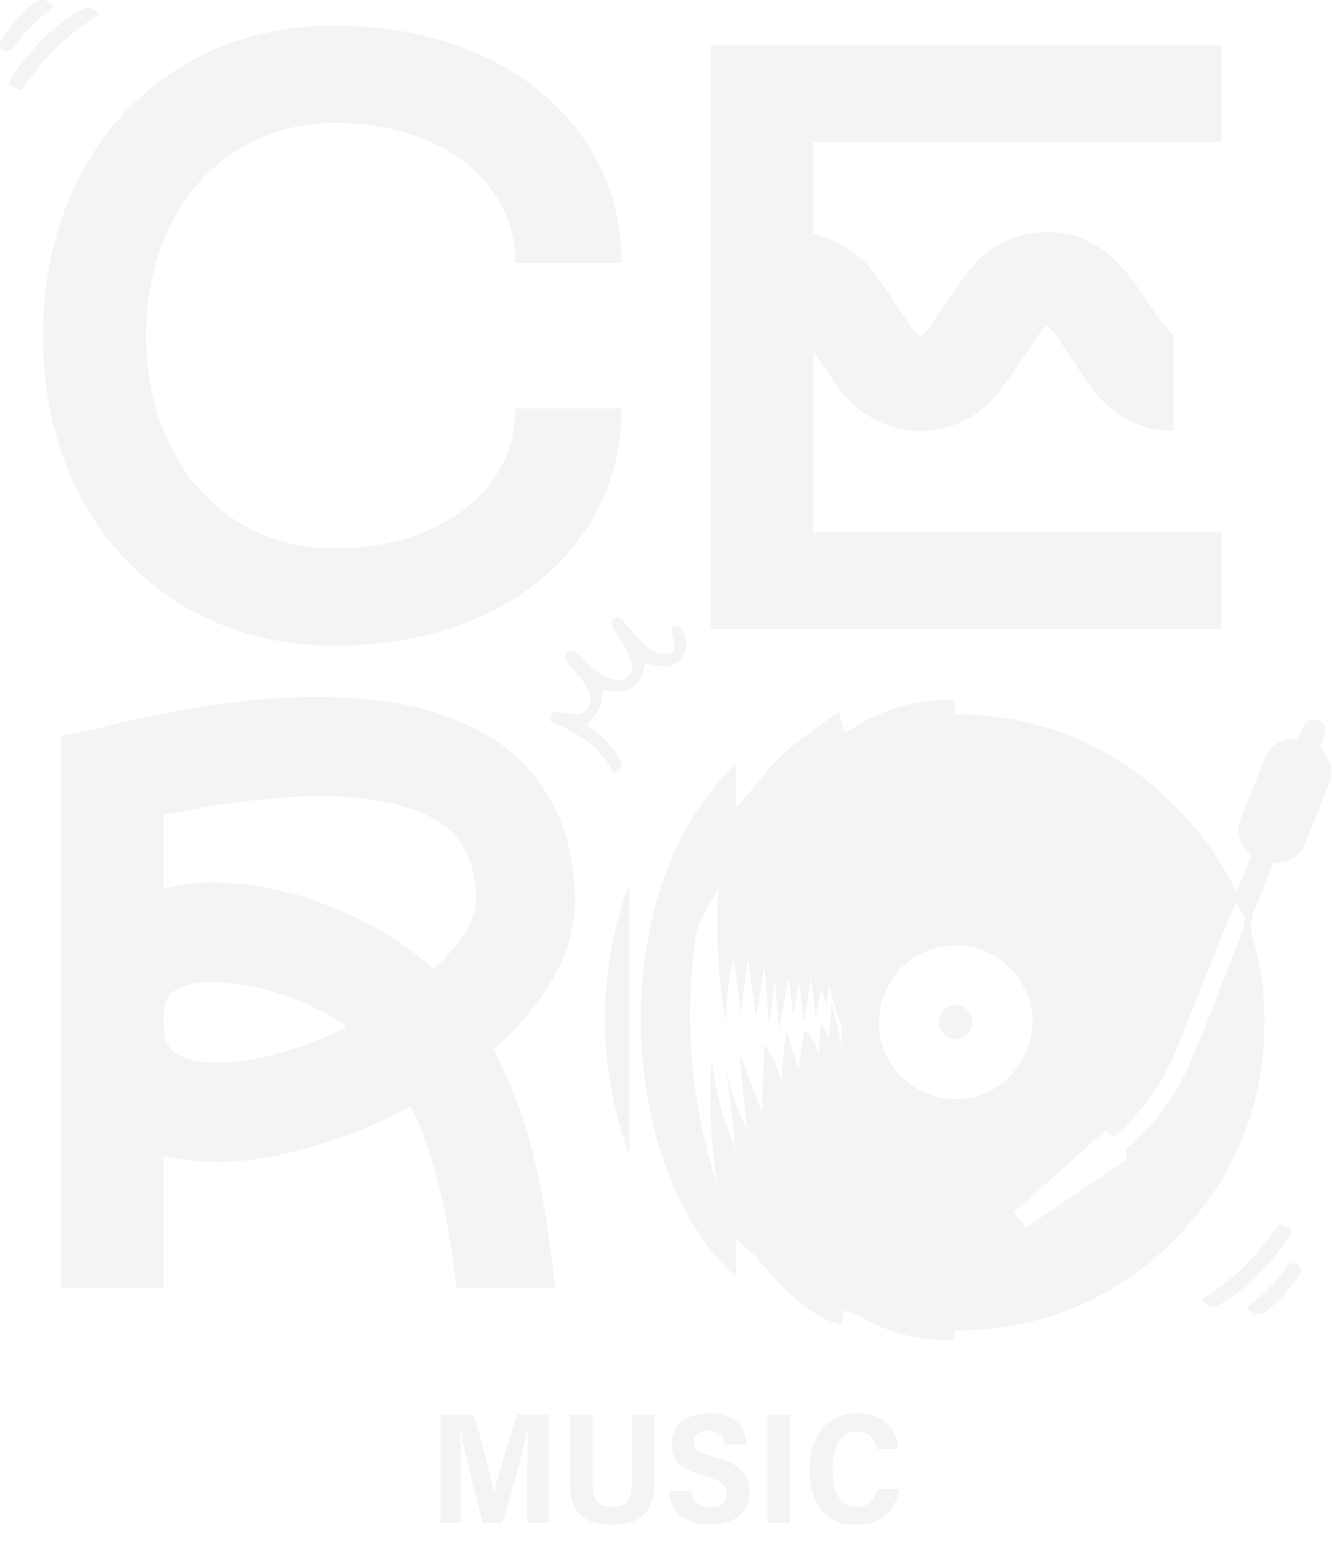 Cero Music